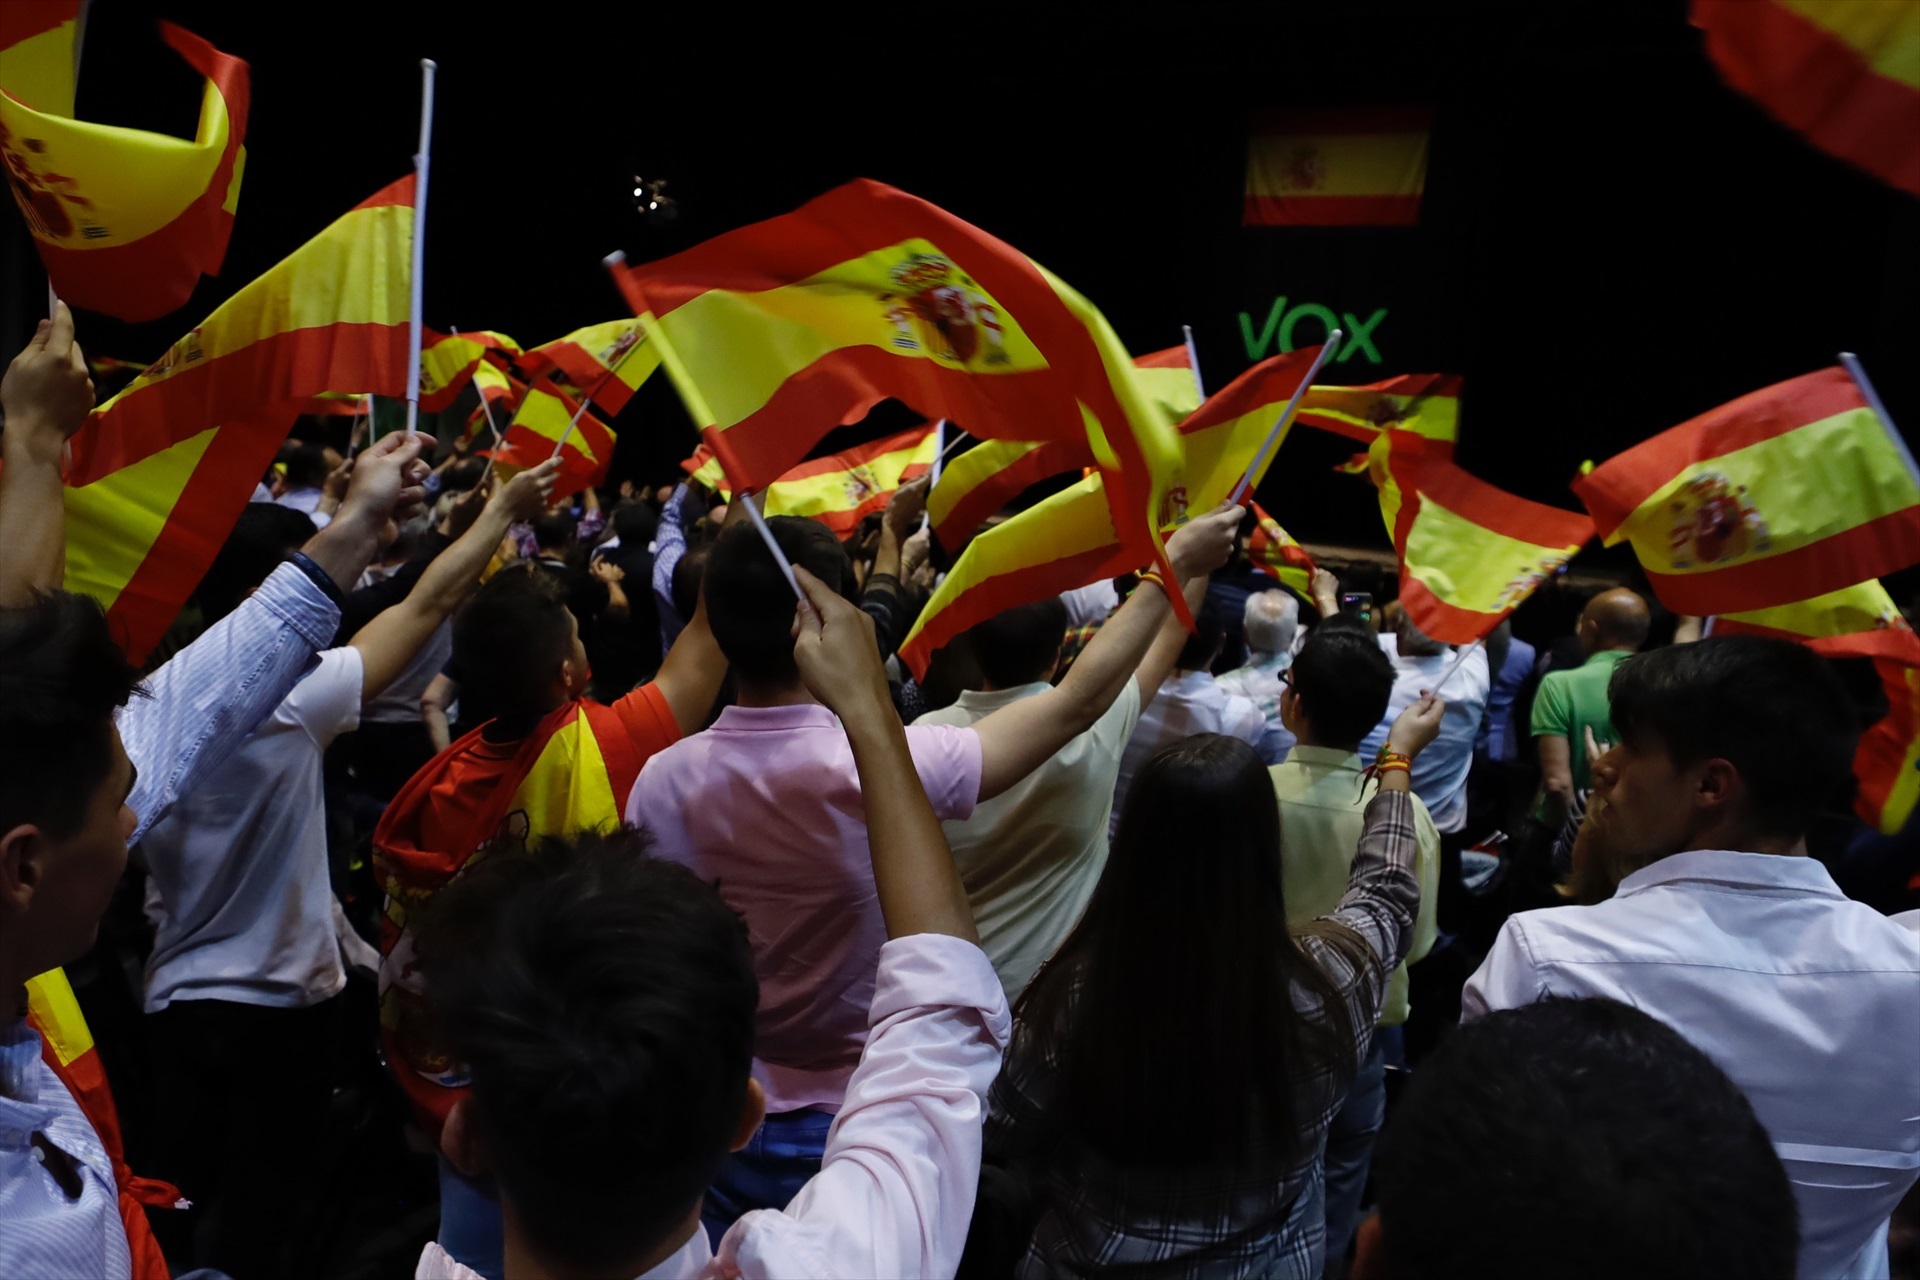 Una multitud ondea banderas españolas durante el acto de Vox en la Sala Multiusos del Auditorio de Zaragoza, en Zaragoza a 19 de octubre de 2019. (Foto: Fabián Simón/Europa Press)